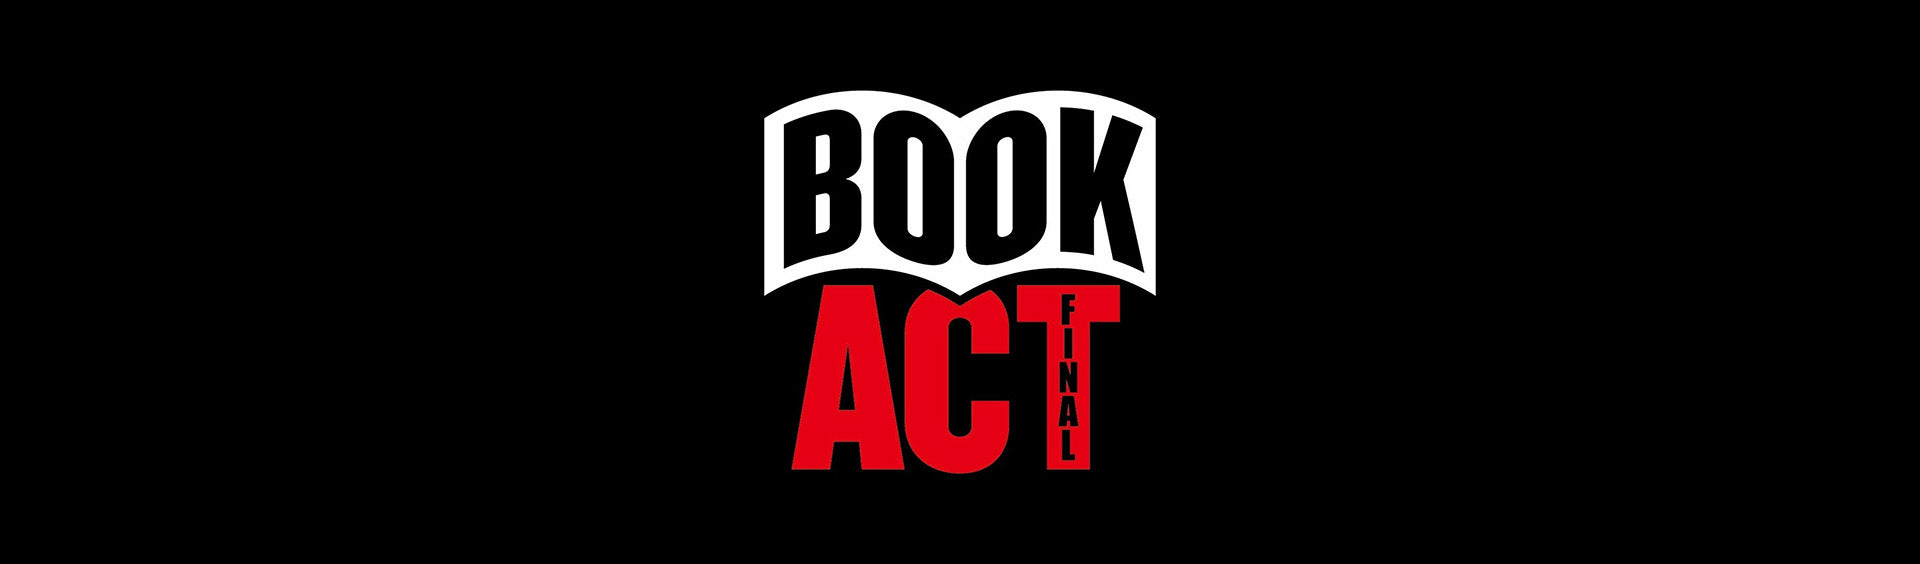 BOOK ACT FINAL – BOOKACT